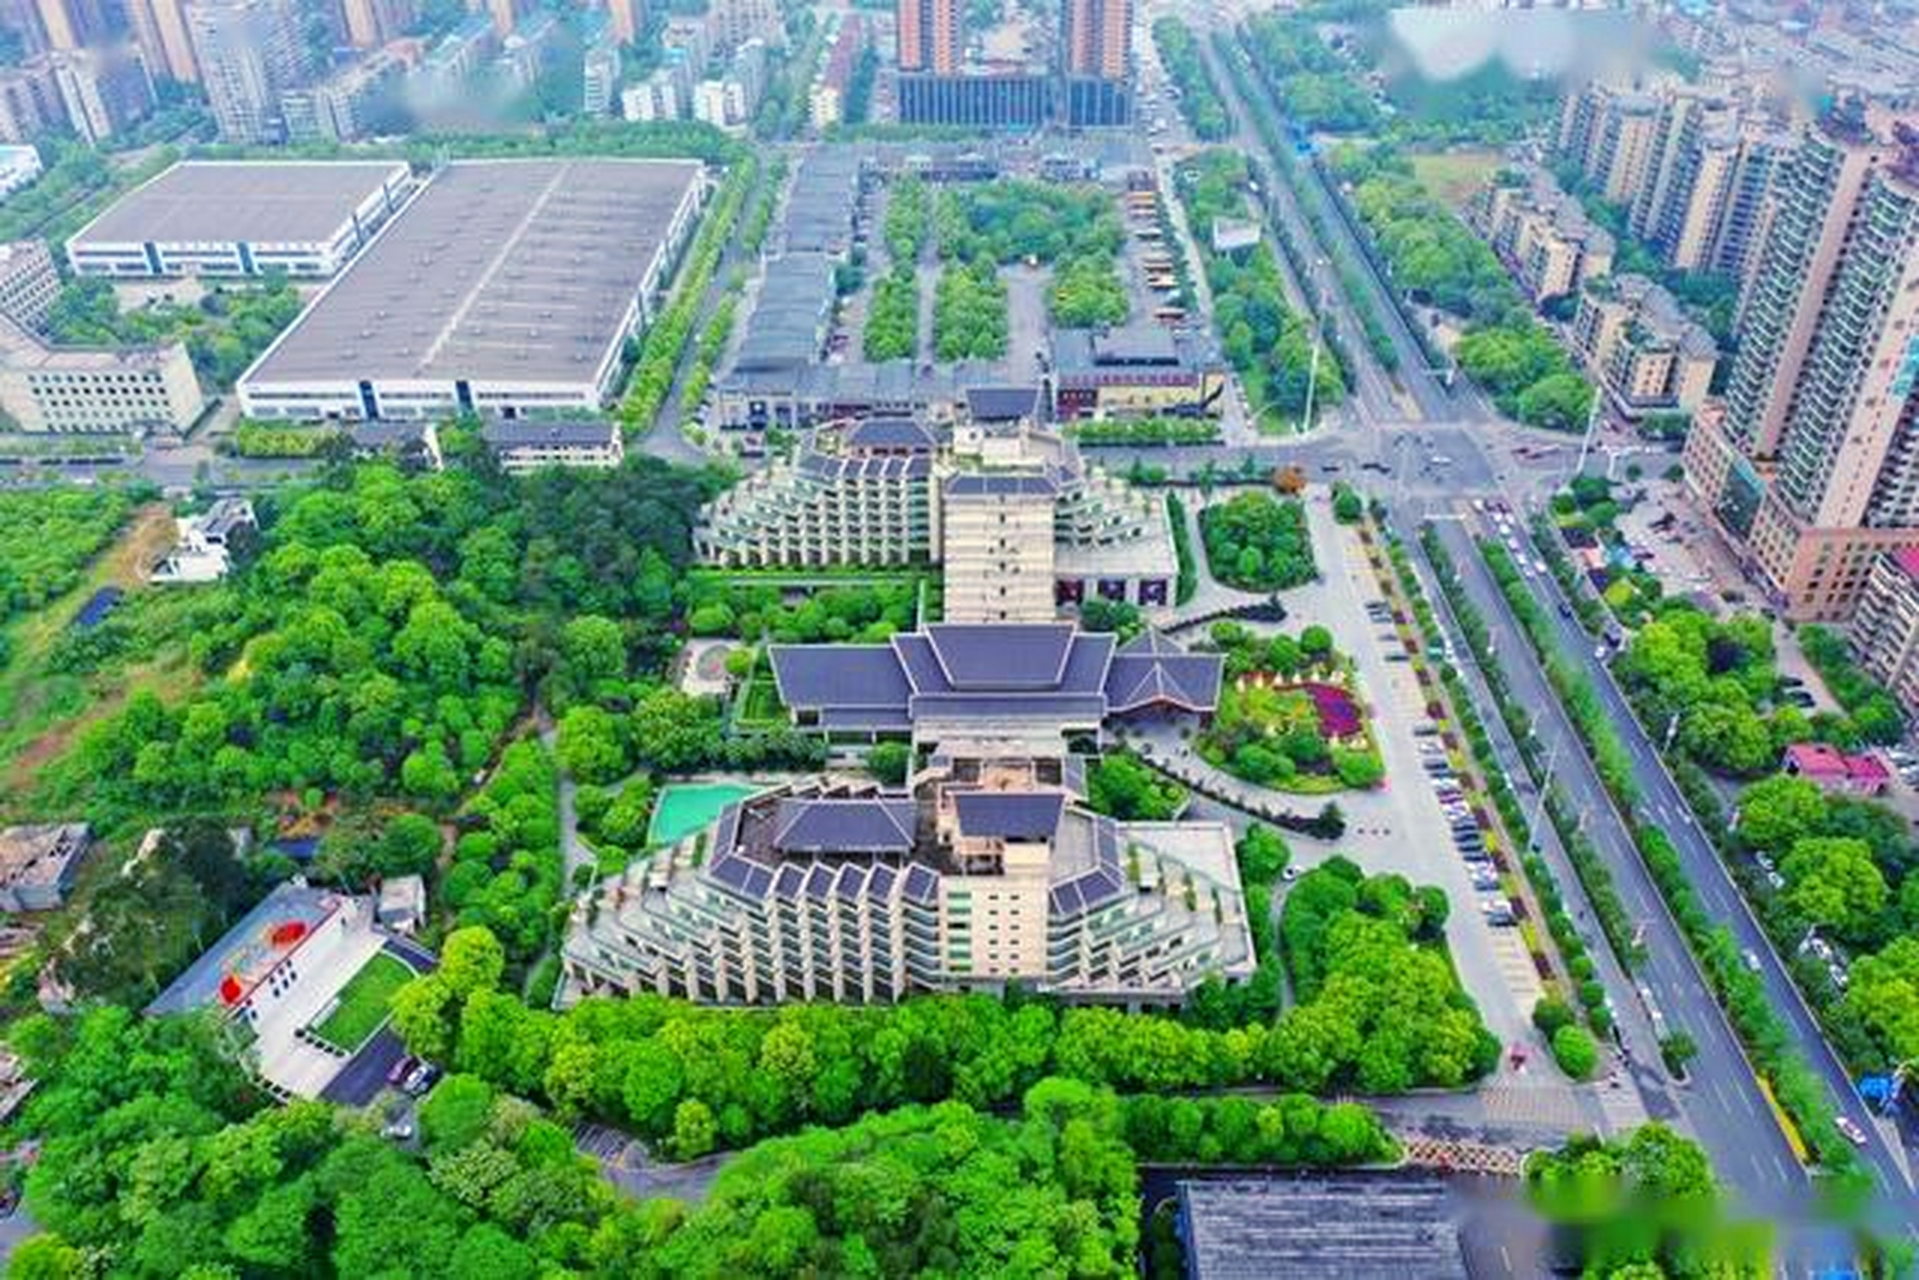 衡阳林隐假日大酒店是衡阳市首家由中,港合资开发的集餐饮,休闲娱乐